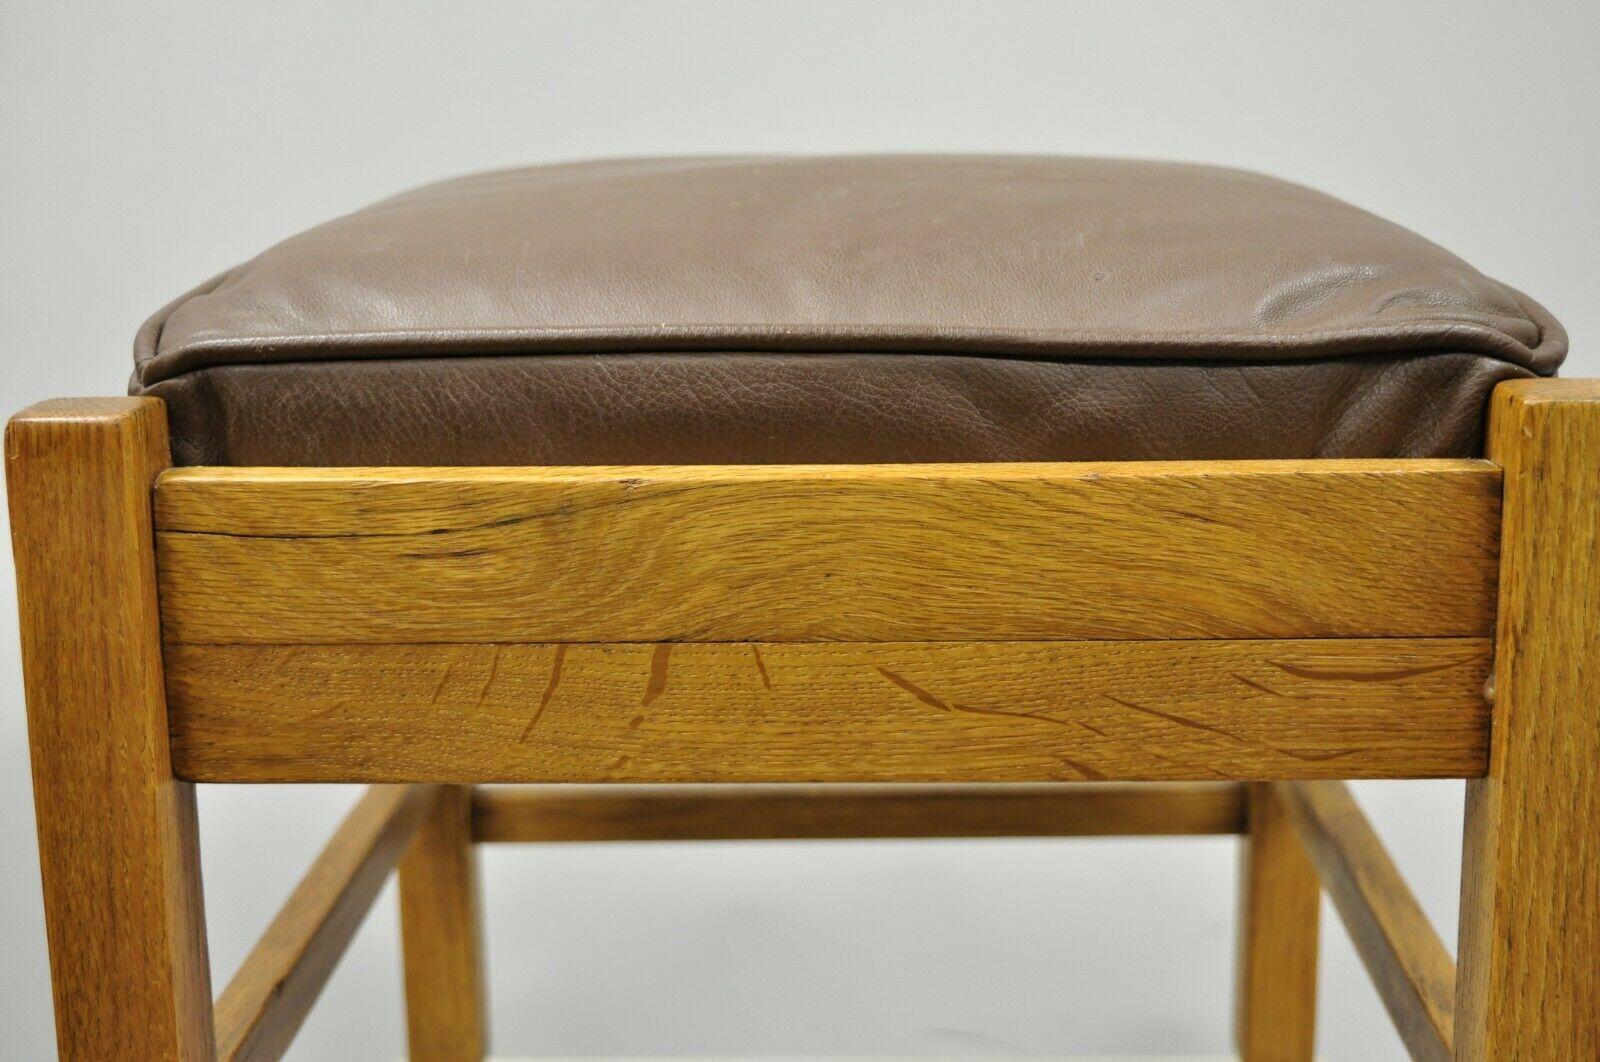 Cuir Tabouret pouf ottoman en chêne Mission Arts & Crafts en cuir Lifetime Furniture 403 en vente